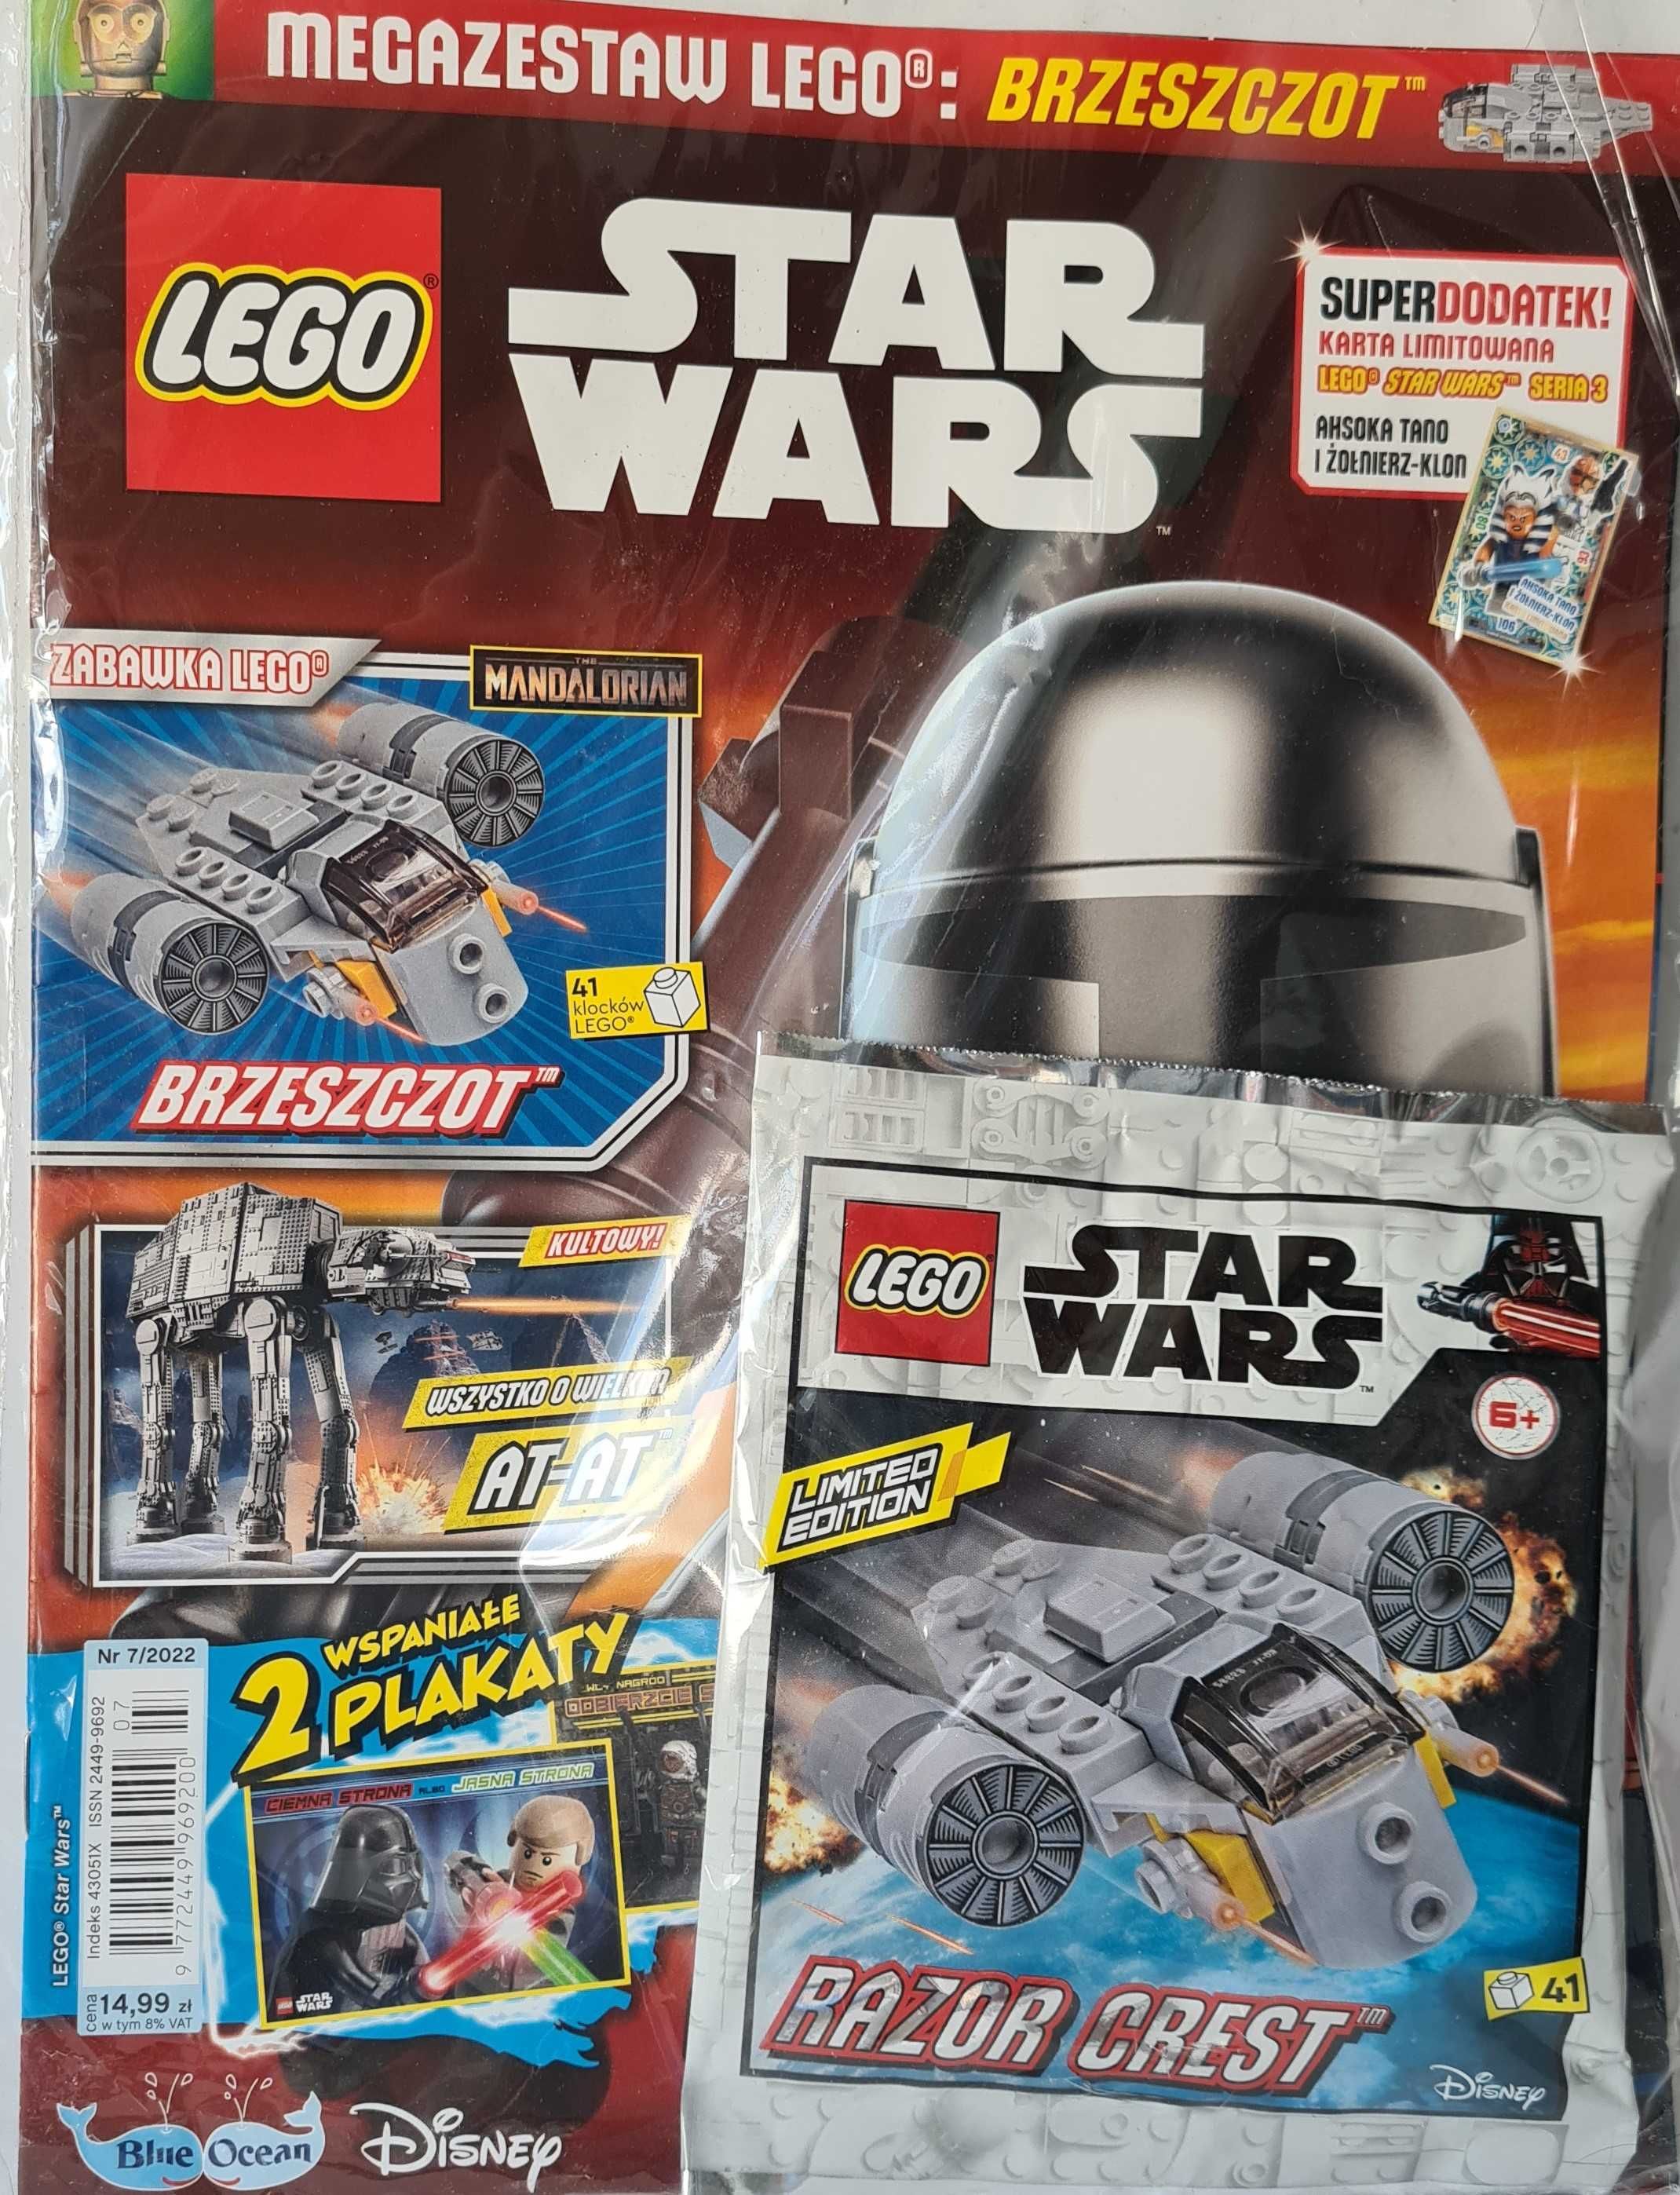 Magazyn Star Wars LEGO +figurki klocki  wybór kolekcji 2020/21